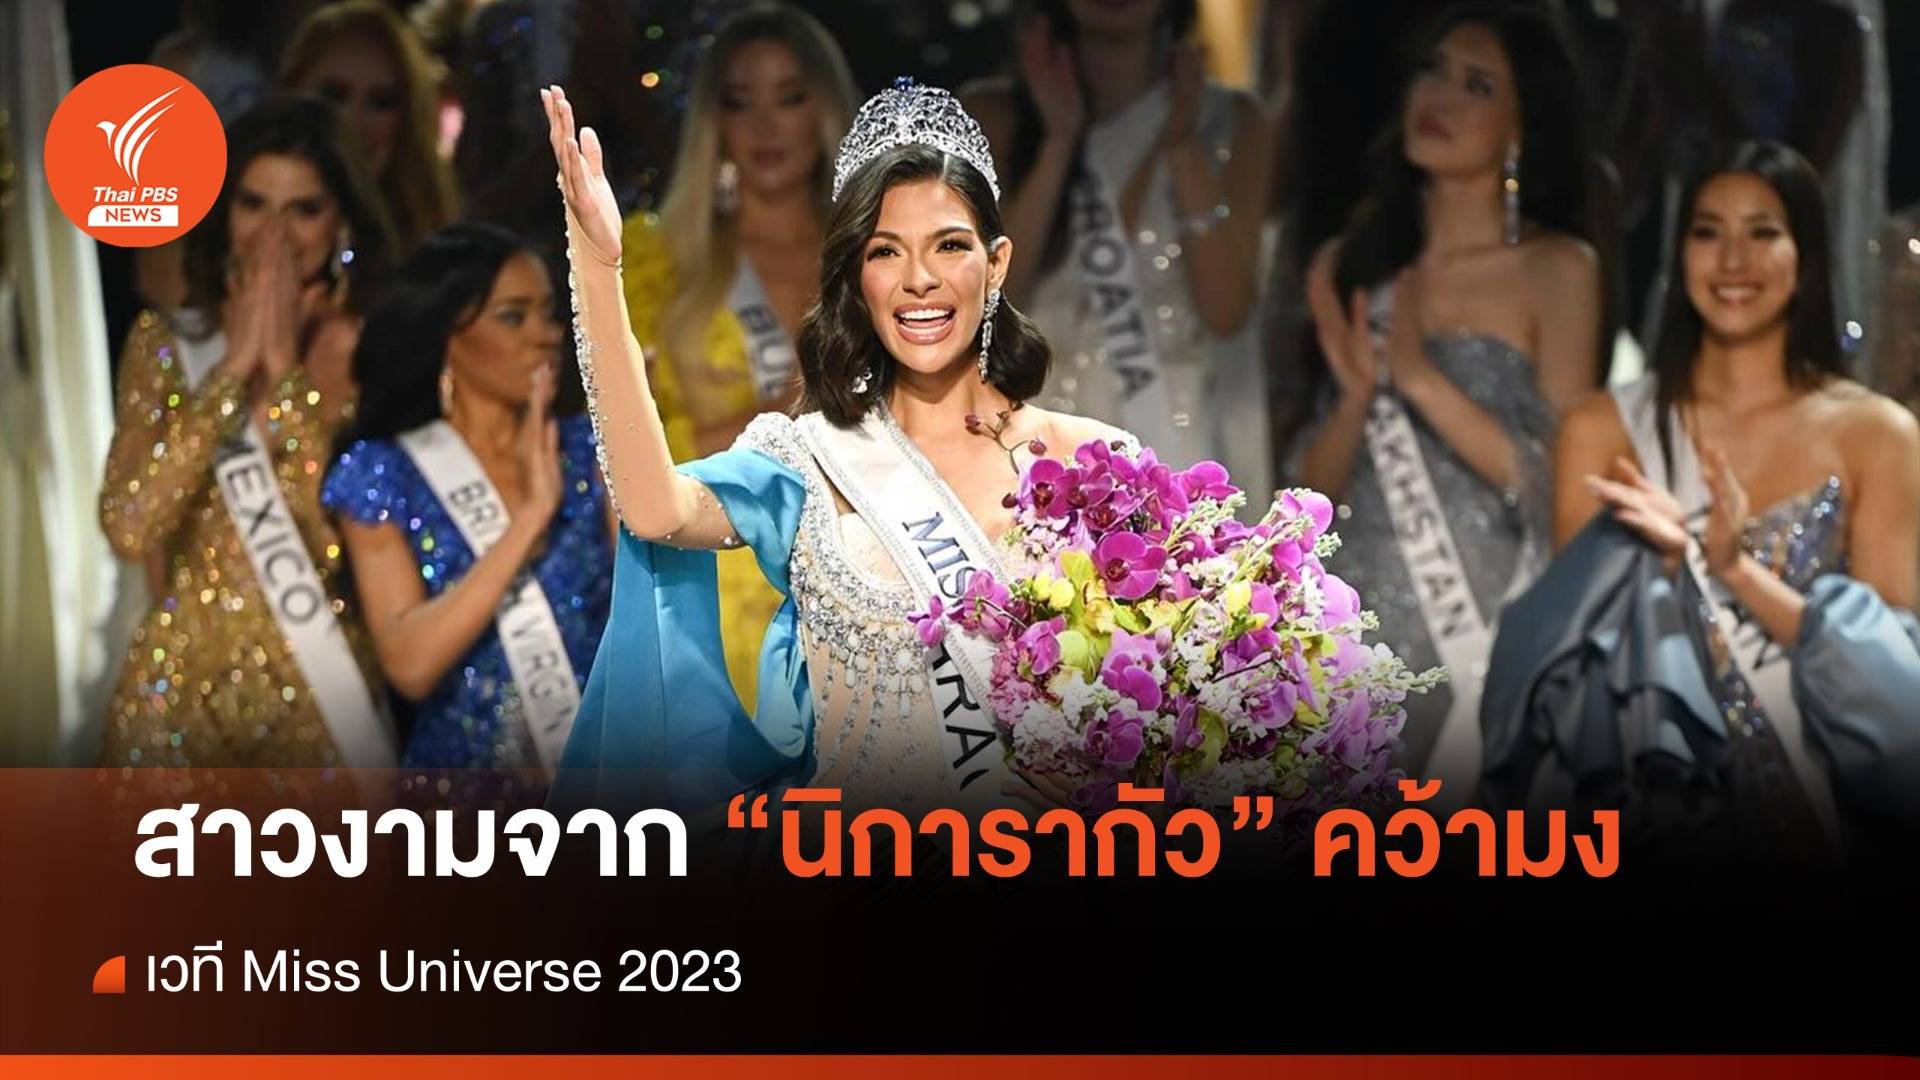 สาวงาม "นิการากัว" คว้ามง Miss Universe 2023 - "แอนโทเนีย โพซิ้ว" รองอันดับ 1